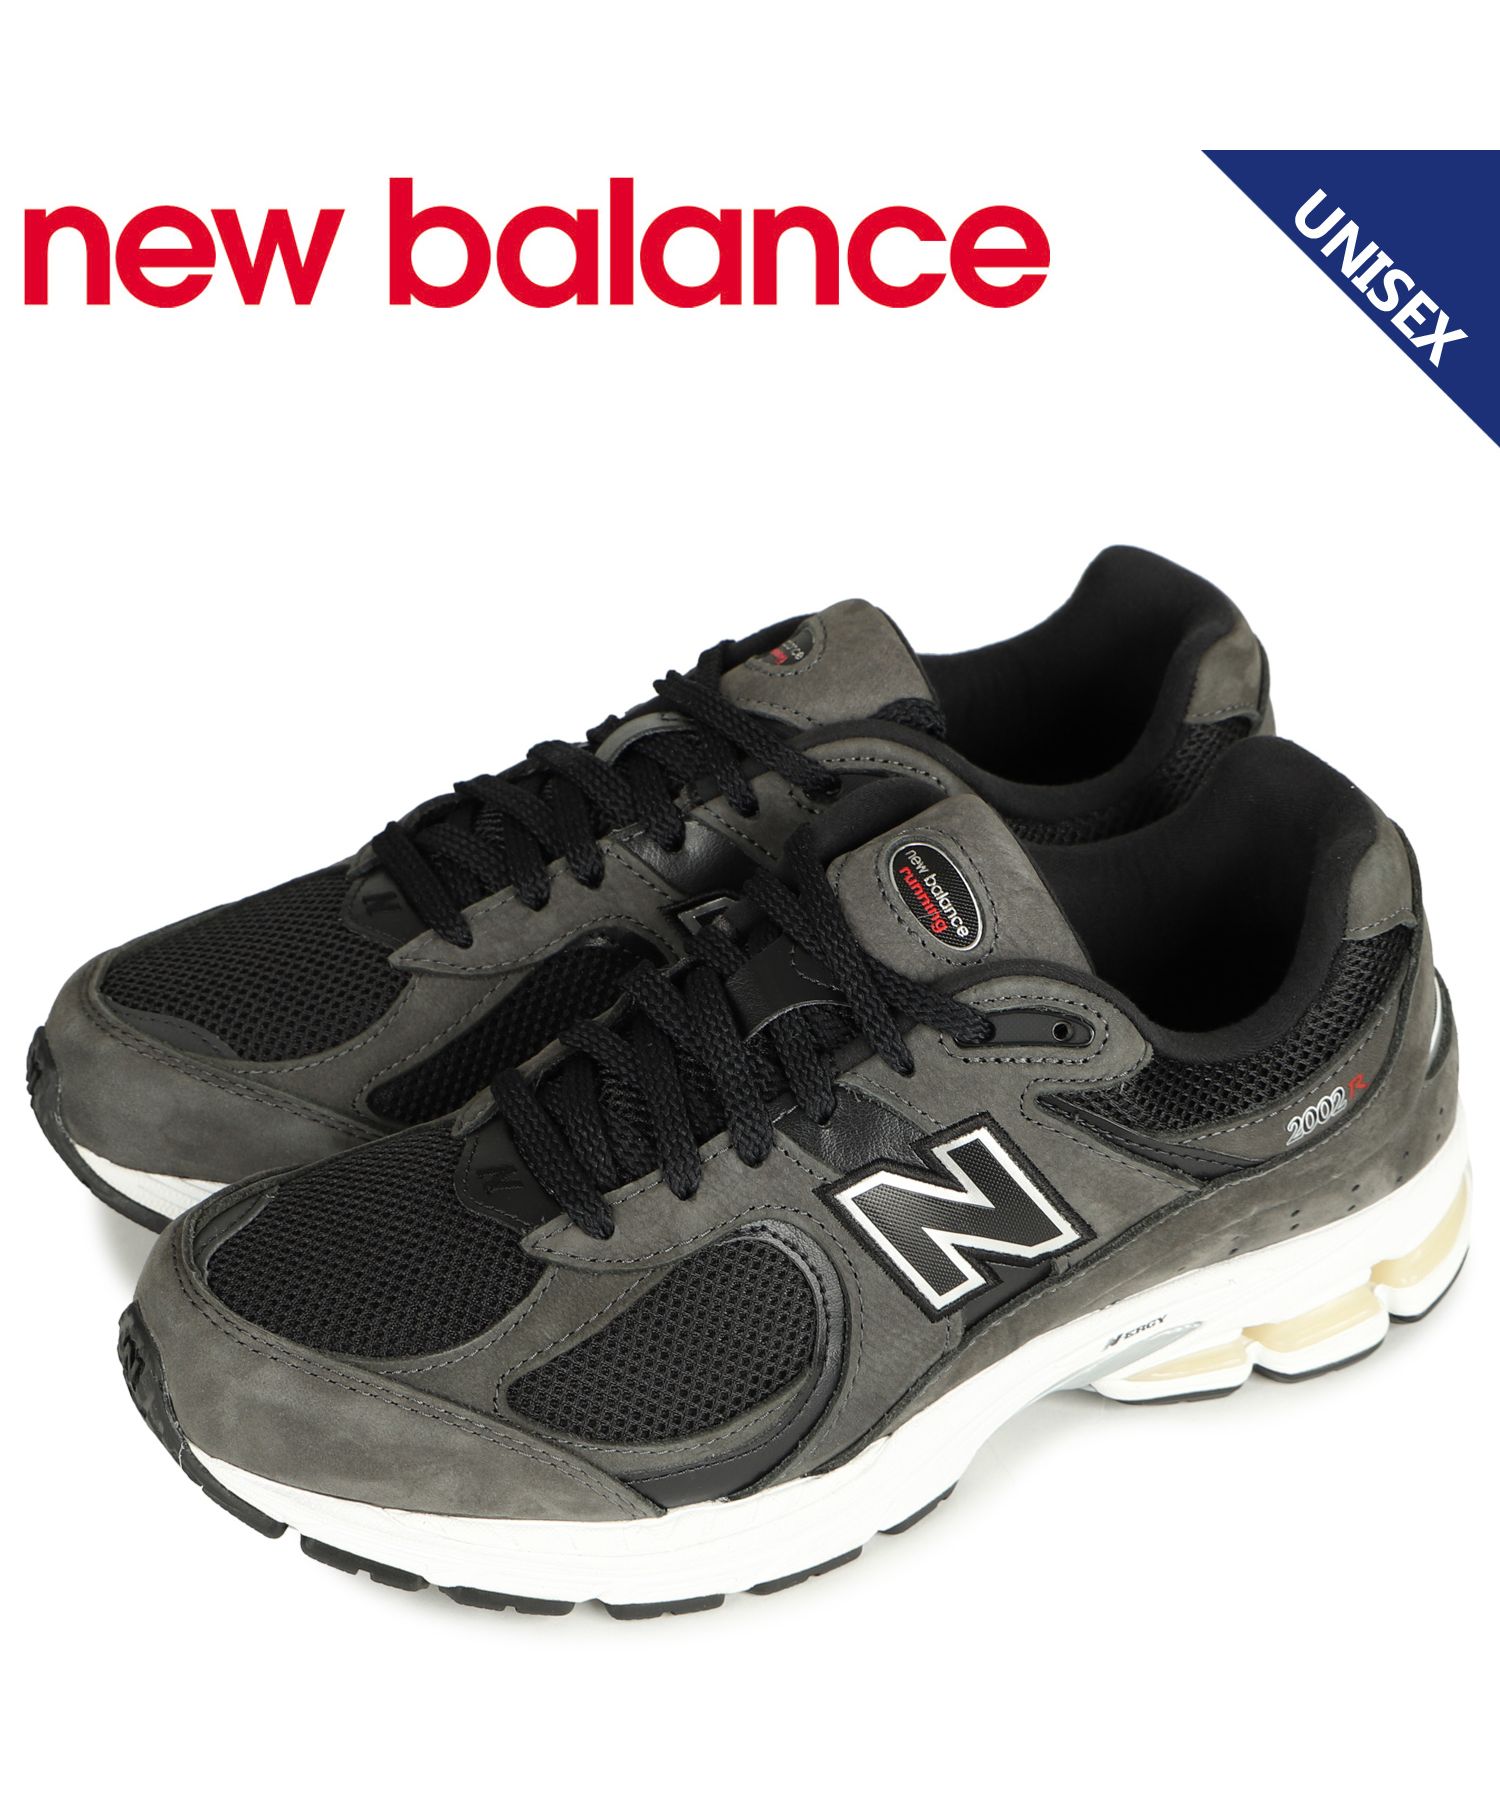 【新品・未使用】 New Balance ニューバランス ML2002RB